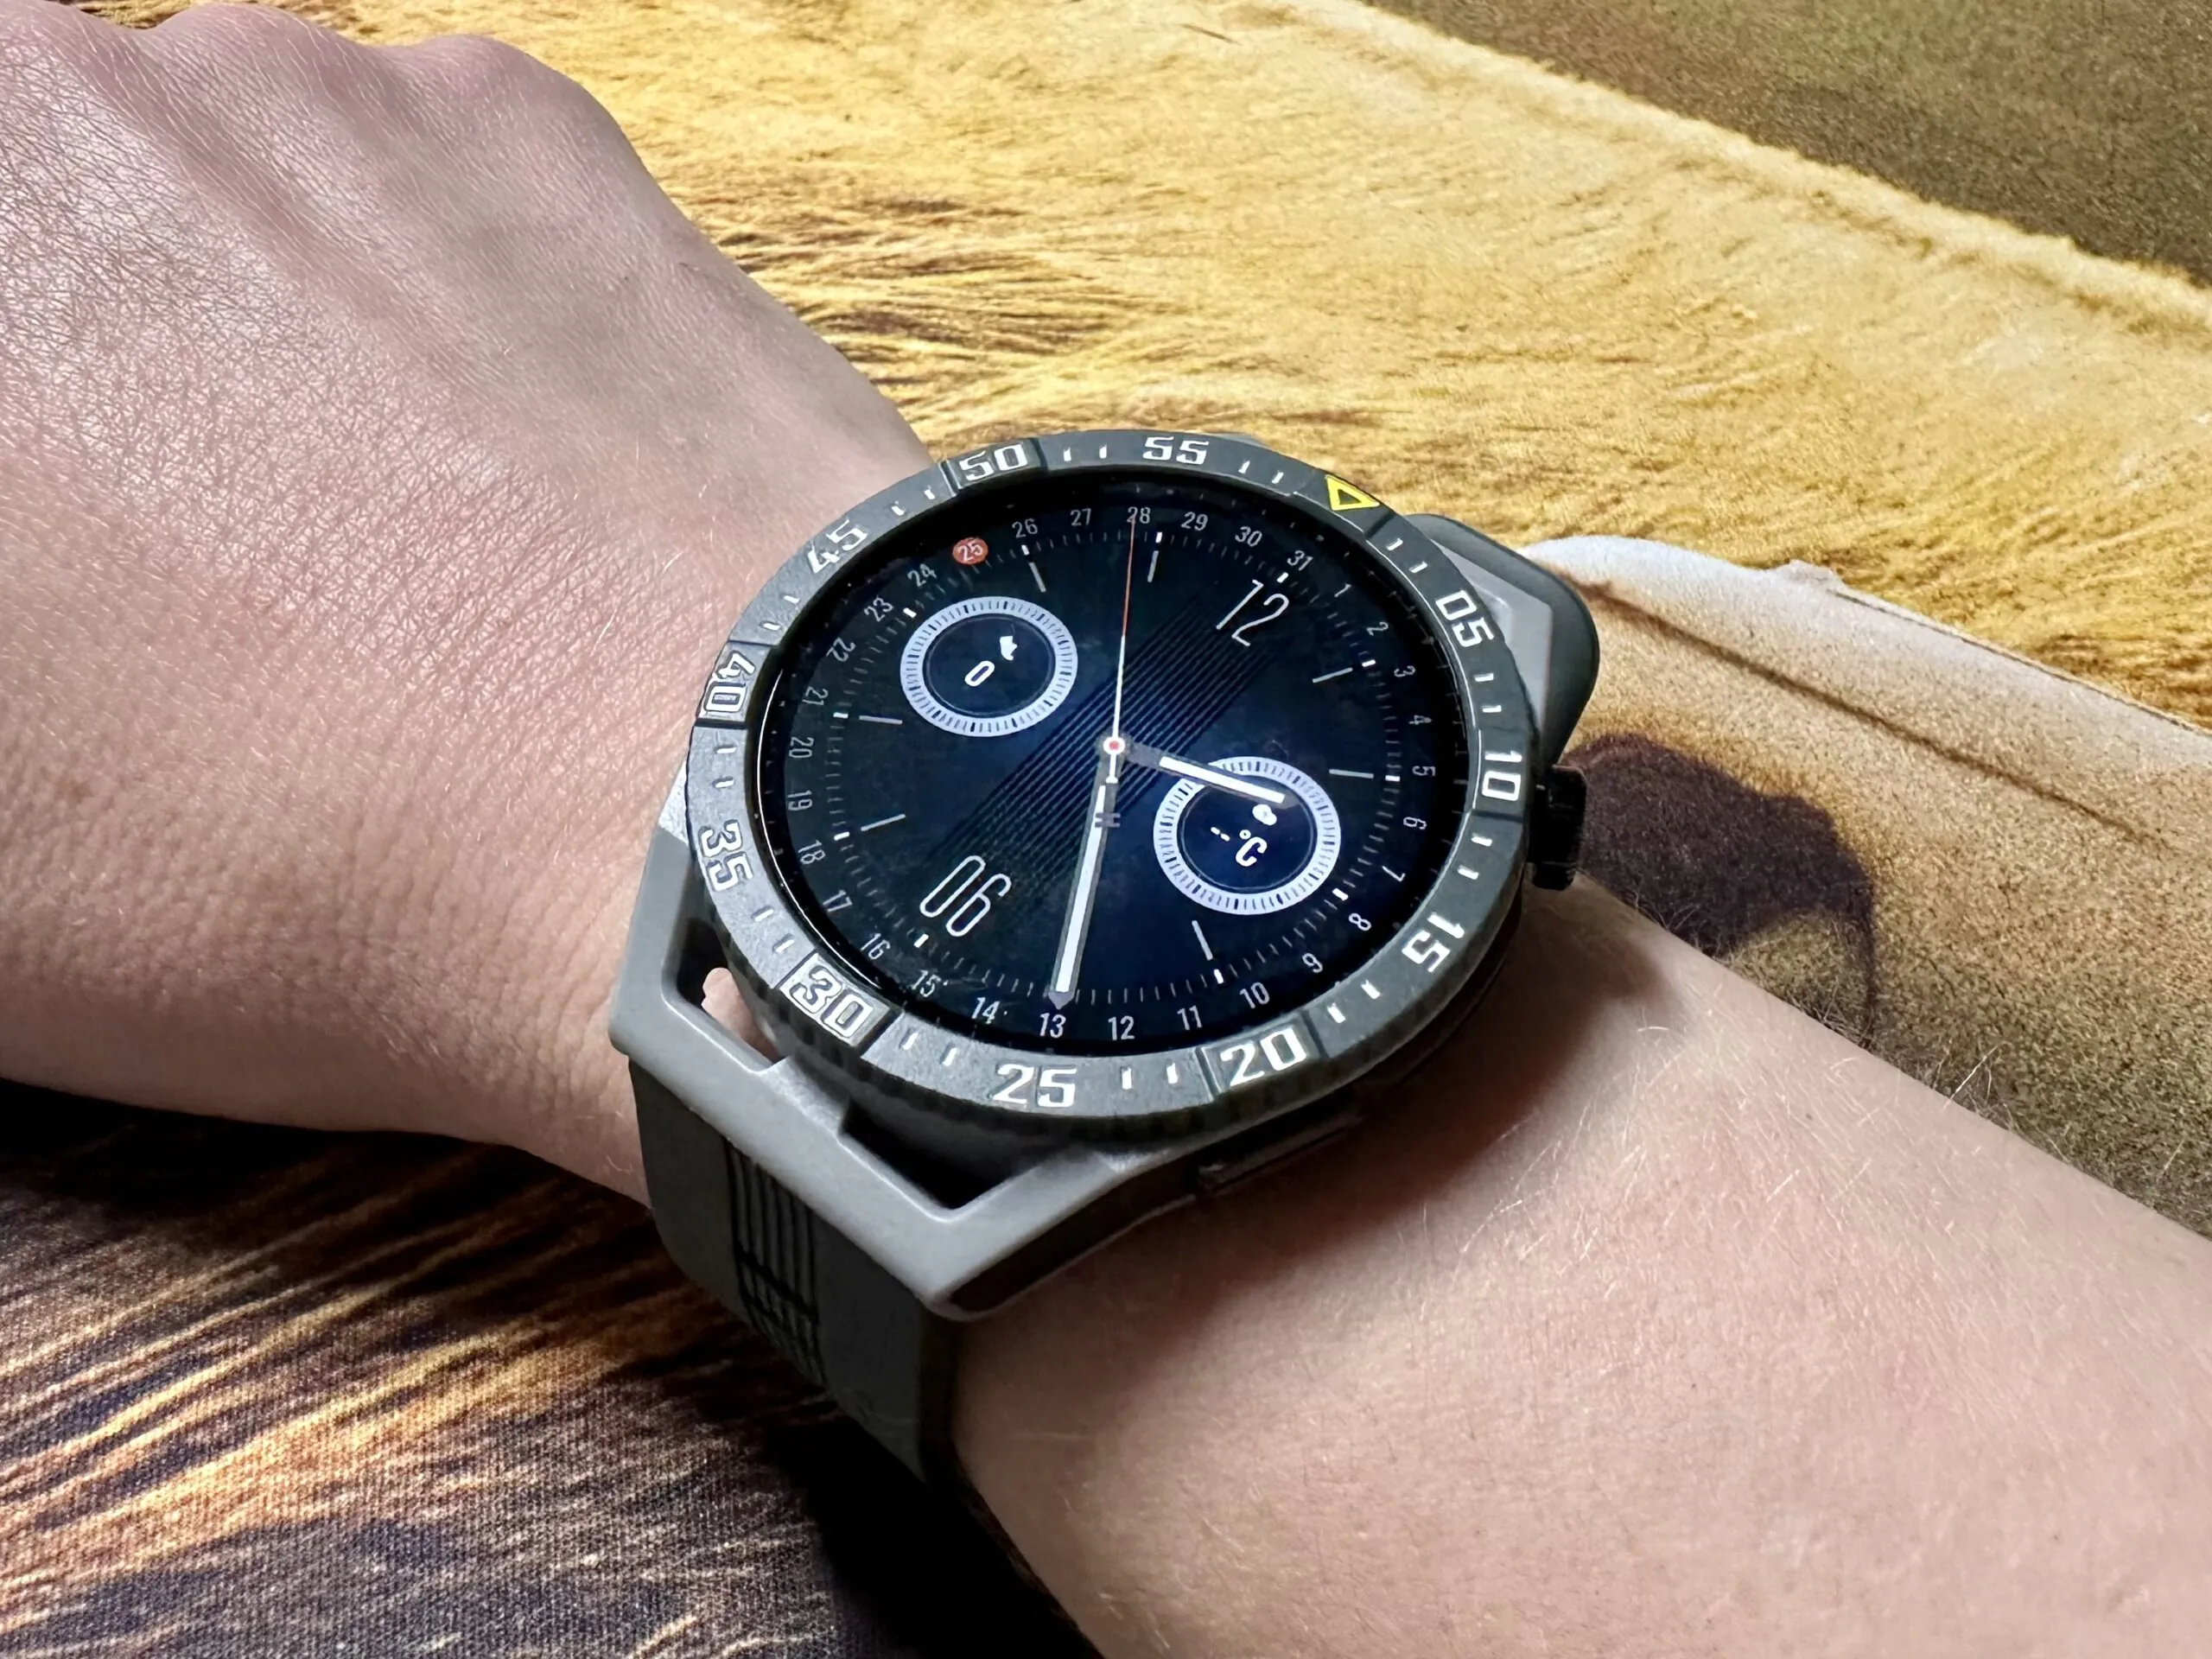 Huawei Vs Honor Watch 4